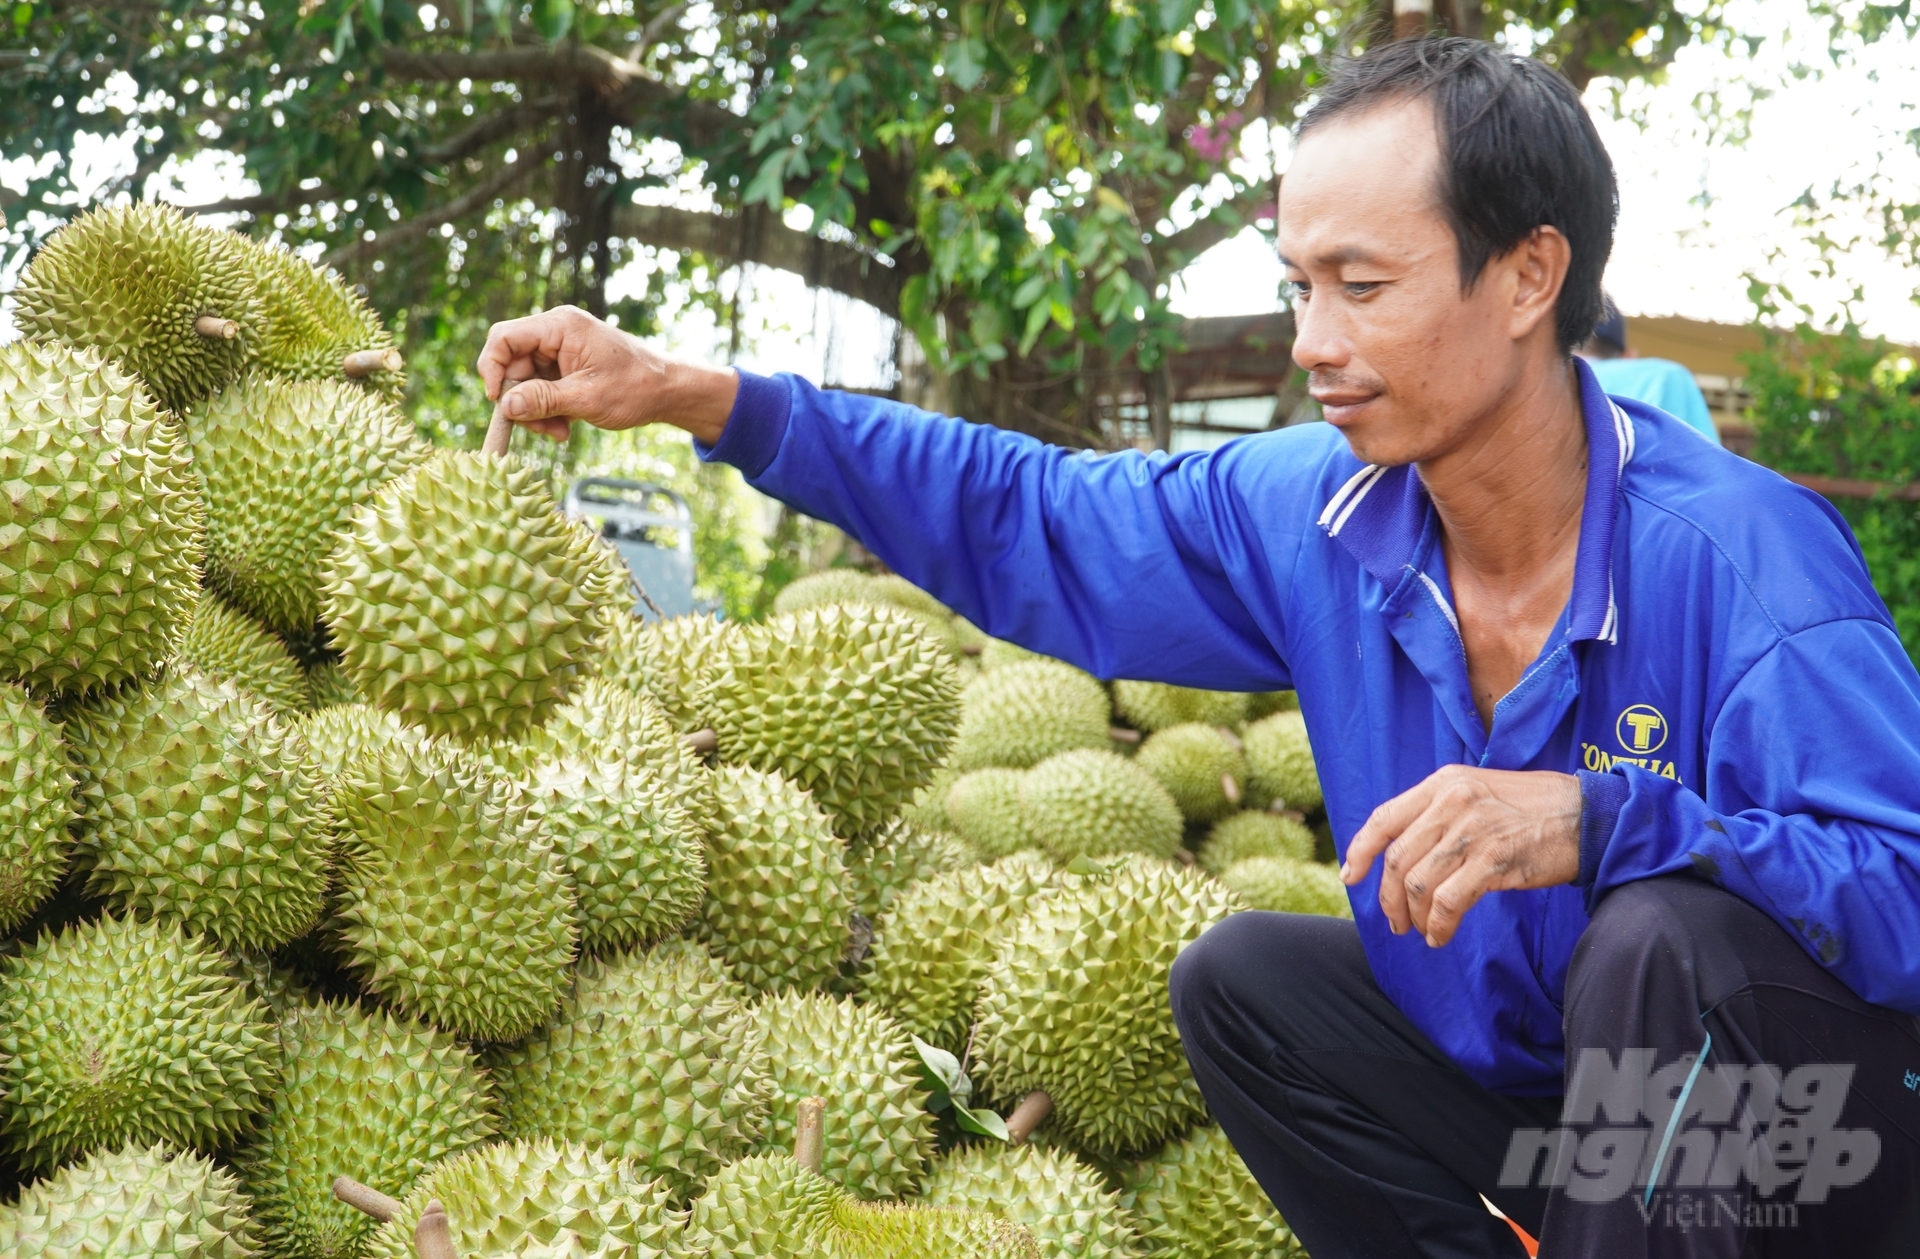 Hiện nay TP Cần Thơ đang bước vào mùa trái cây với nhiều sản phẩm có giá trị cao, tạo sức hút trên thị trường như sầu riêng, măng cụt... Ảnh: Kim Anh.